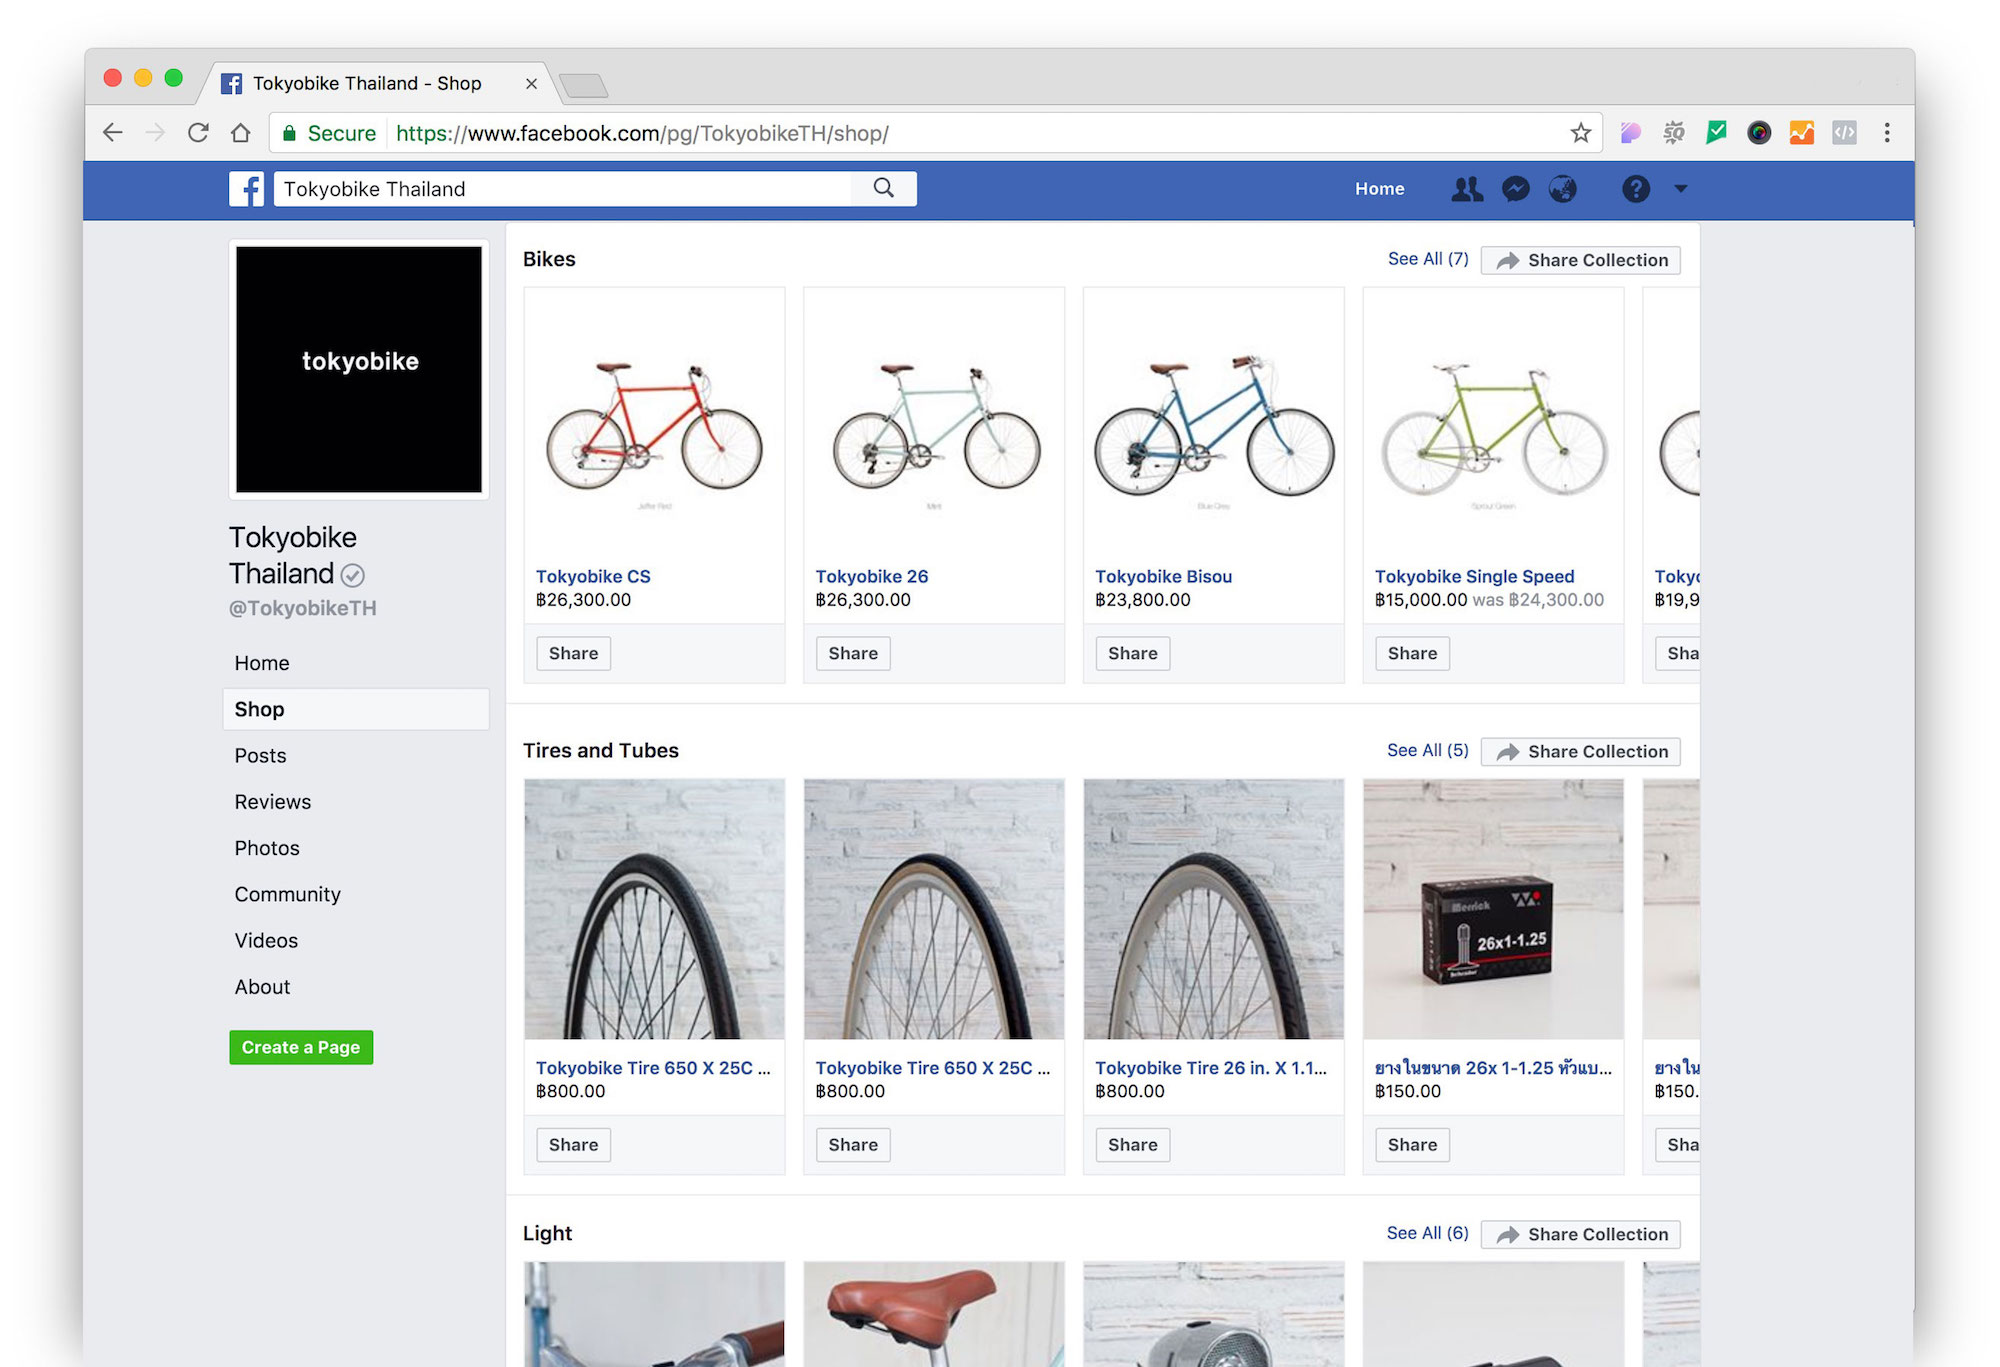 ร้านจักรยาน ออนไลน์ โตเกียวไบค์ เป็น ร้านขายจักรยาน และ อุปกรณ์ จักรยาน บน facebook